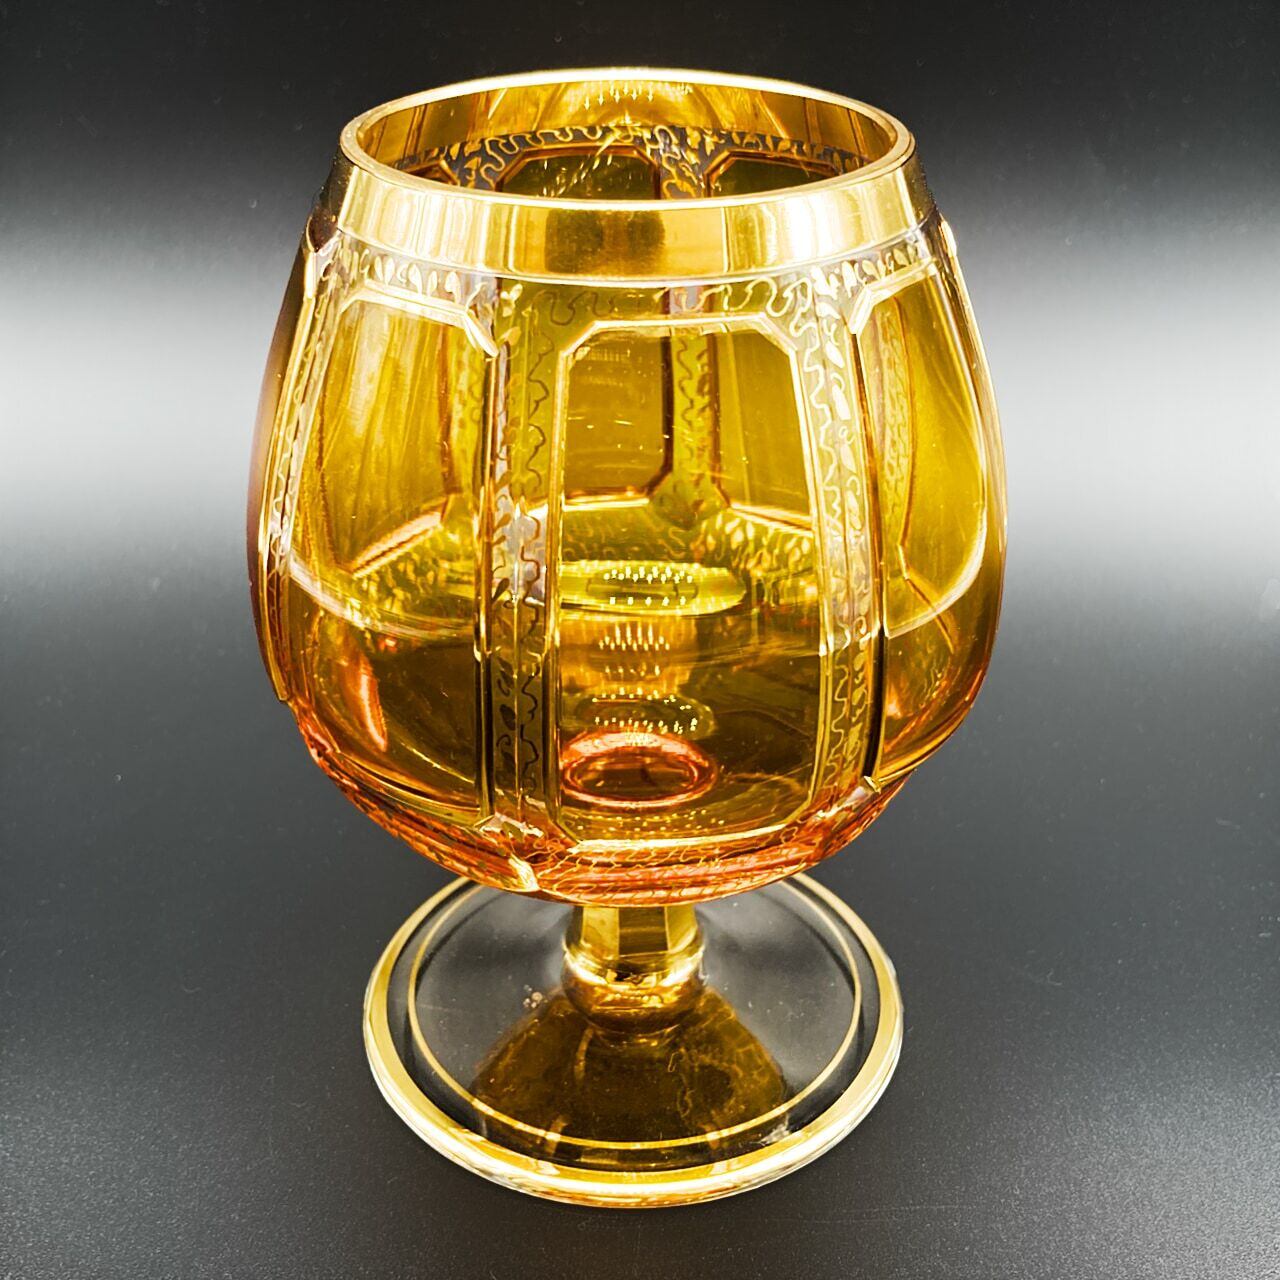 ボヘミアガラス エーゲルマン ショットグラス 琥珀 アンバー 金彩 風景画